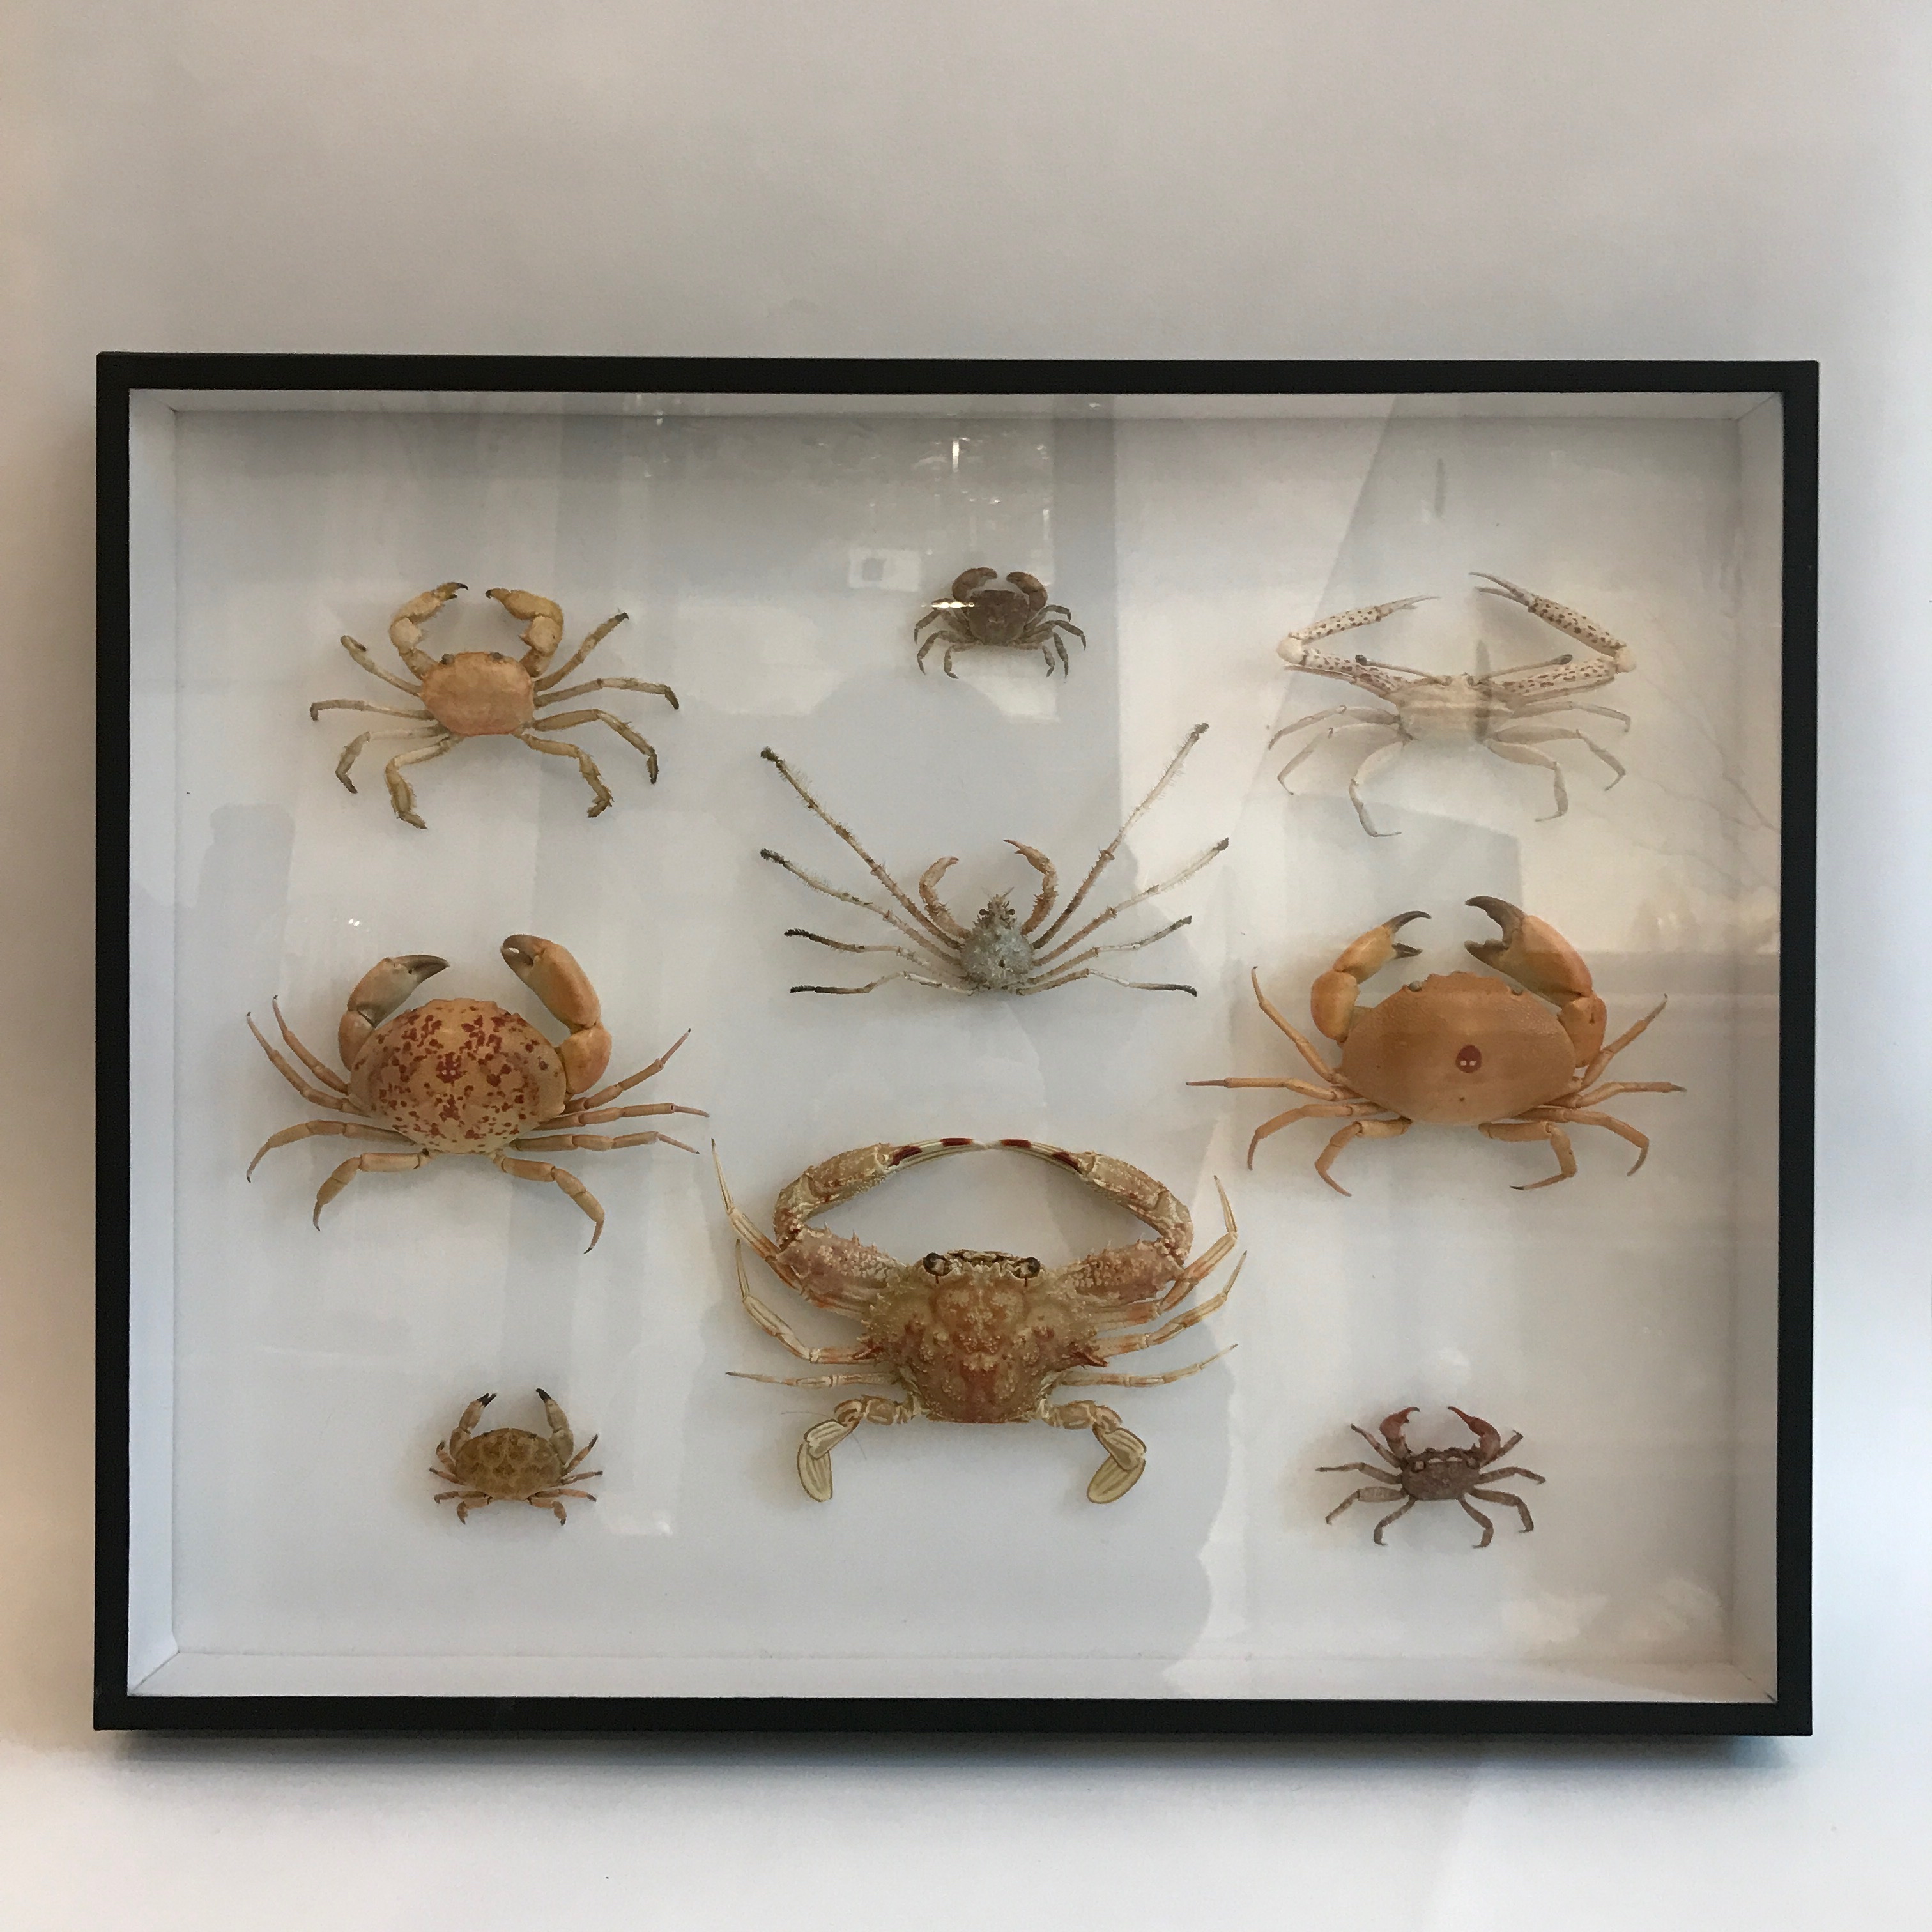 Crab specimen museum box